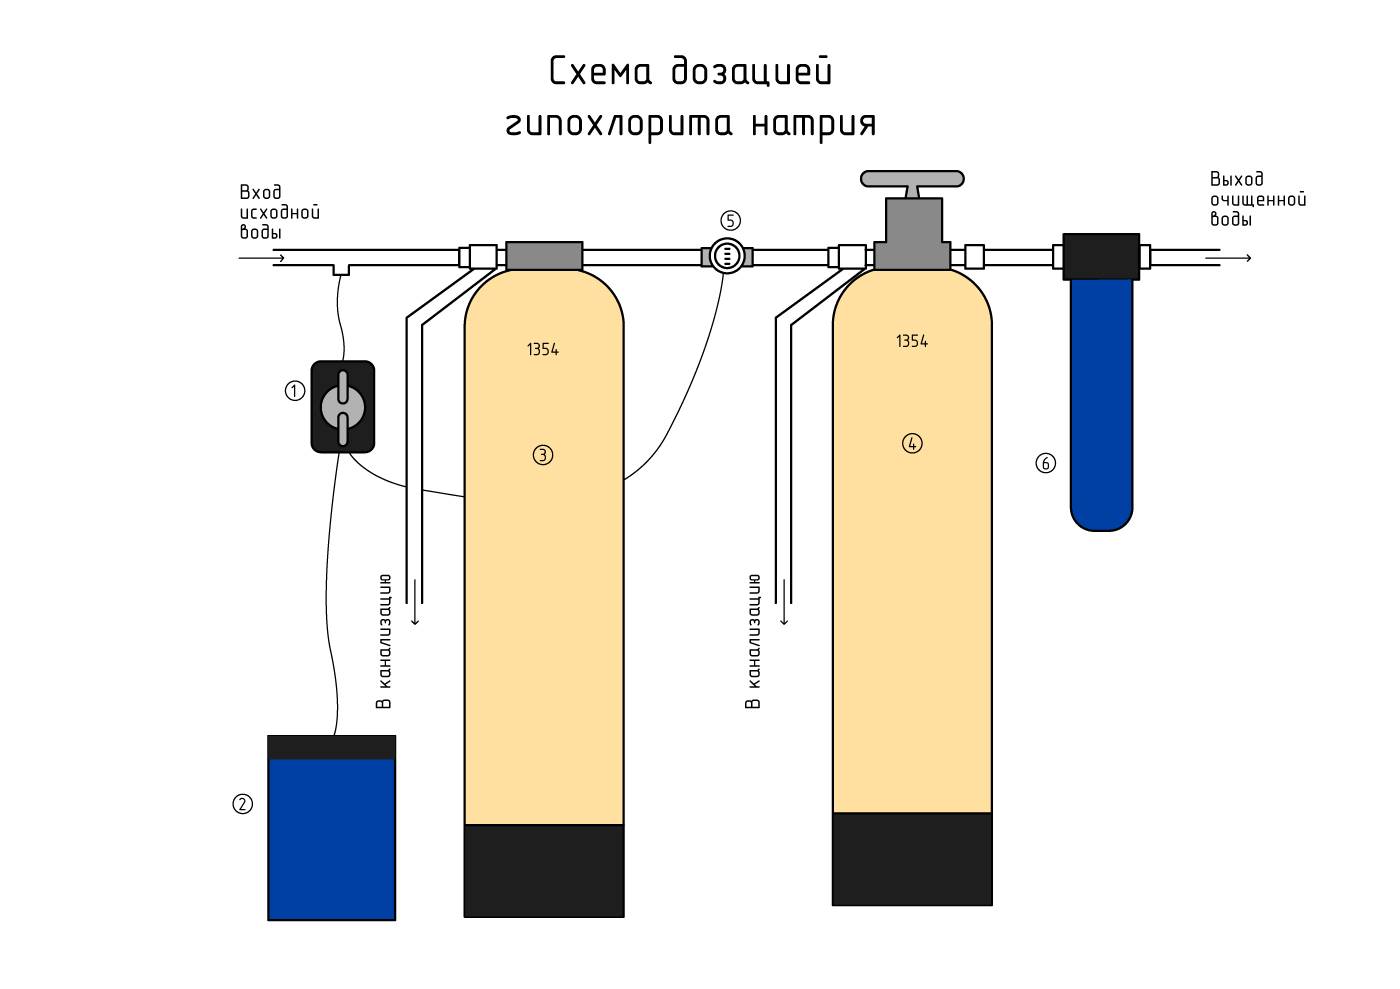 Как очистить воду от железа из скважины: химические способы и механические фильтры своими руками